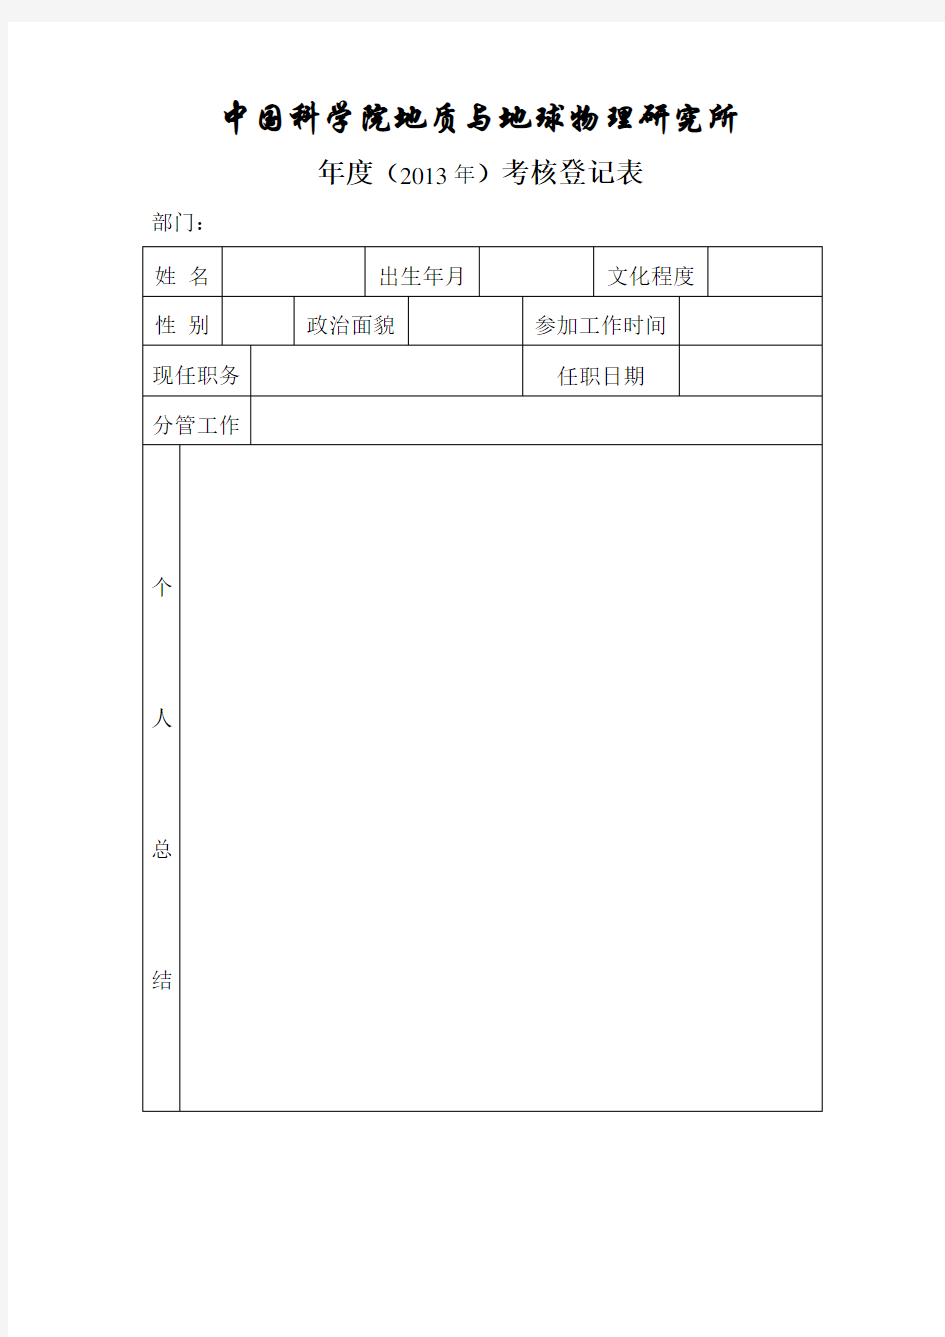 年度考核登记表 - 中国科学院地质与地球物理研究所